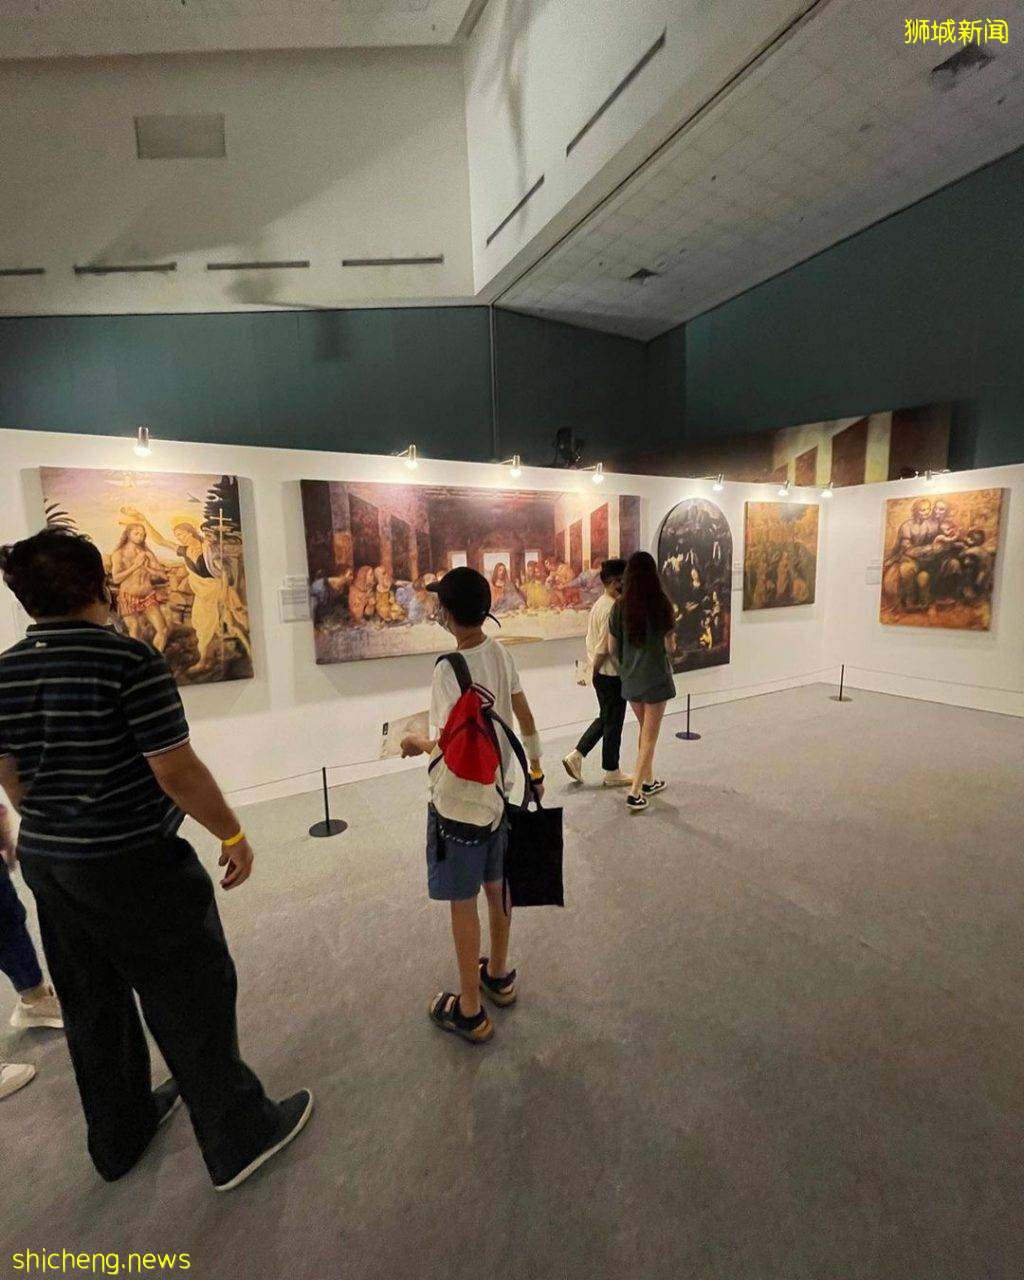 新加坡科學館“達芬奇展覽”🎨10個展區、50多項模型+畫作展出🖌重新認識這位傳奇人物